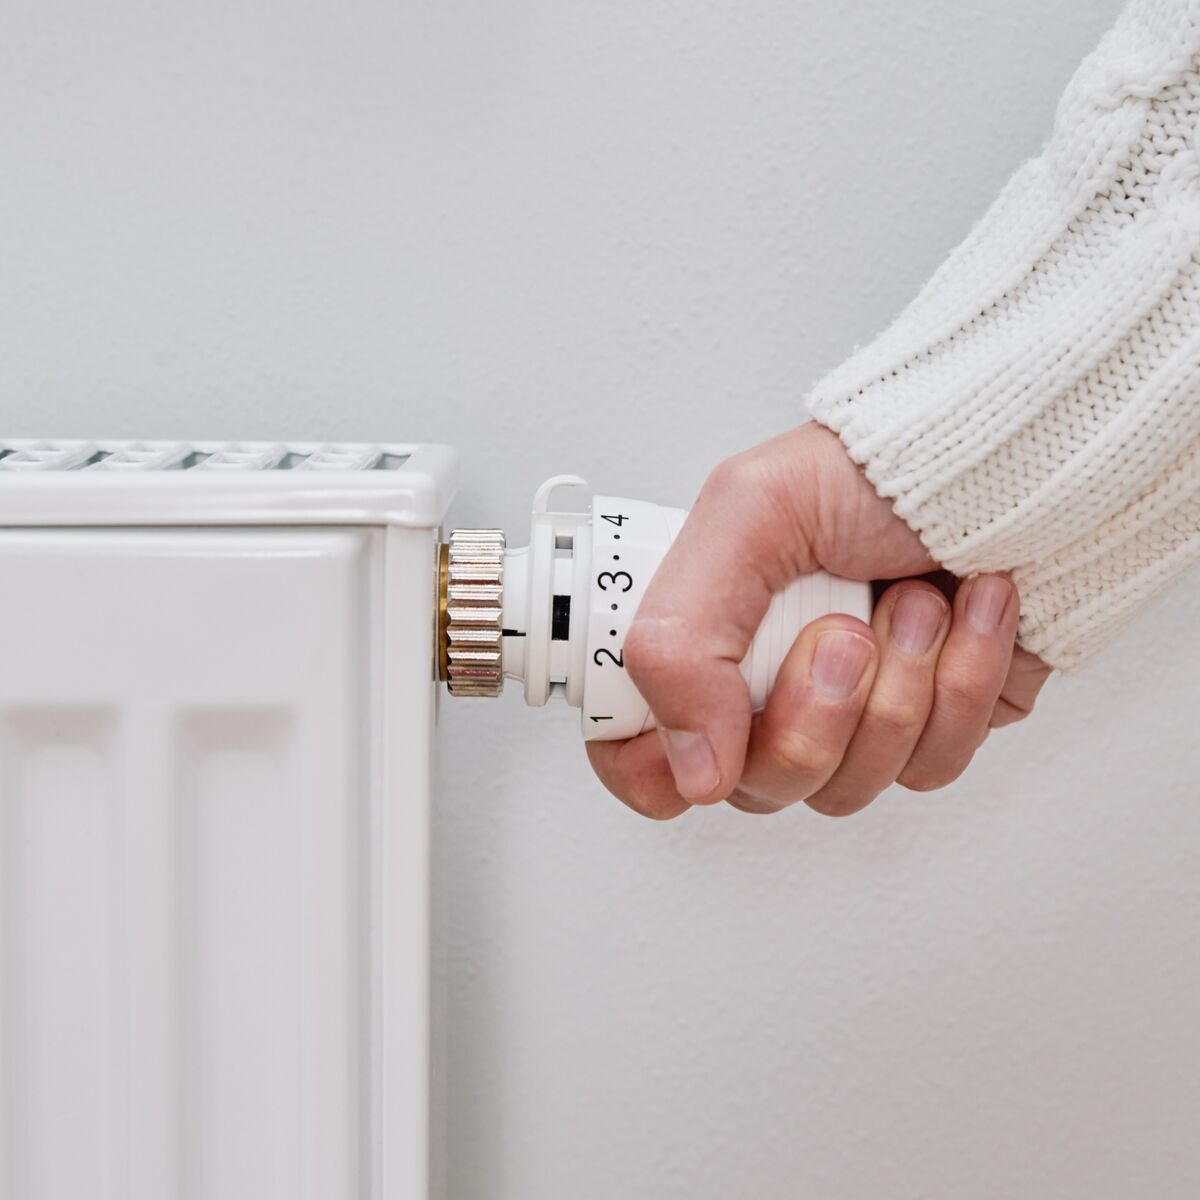 Économies d'énergie : quand éteindre ou baisser le chauffage ?